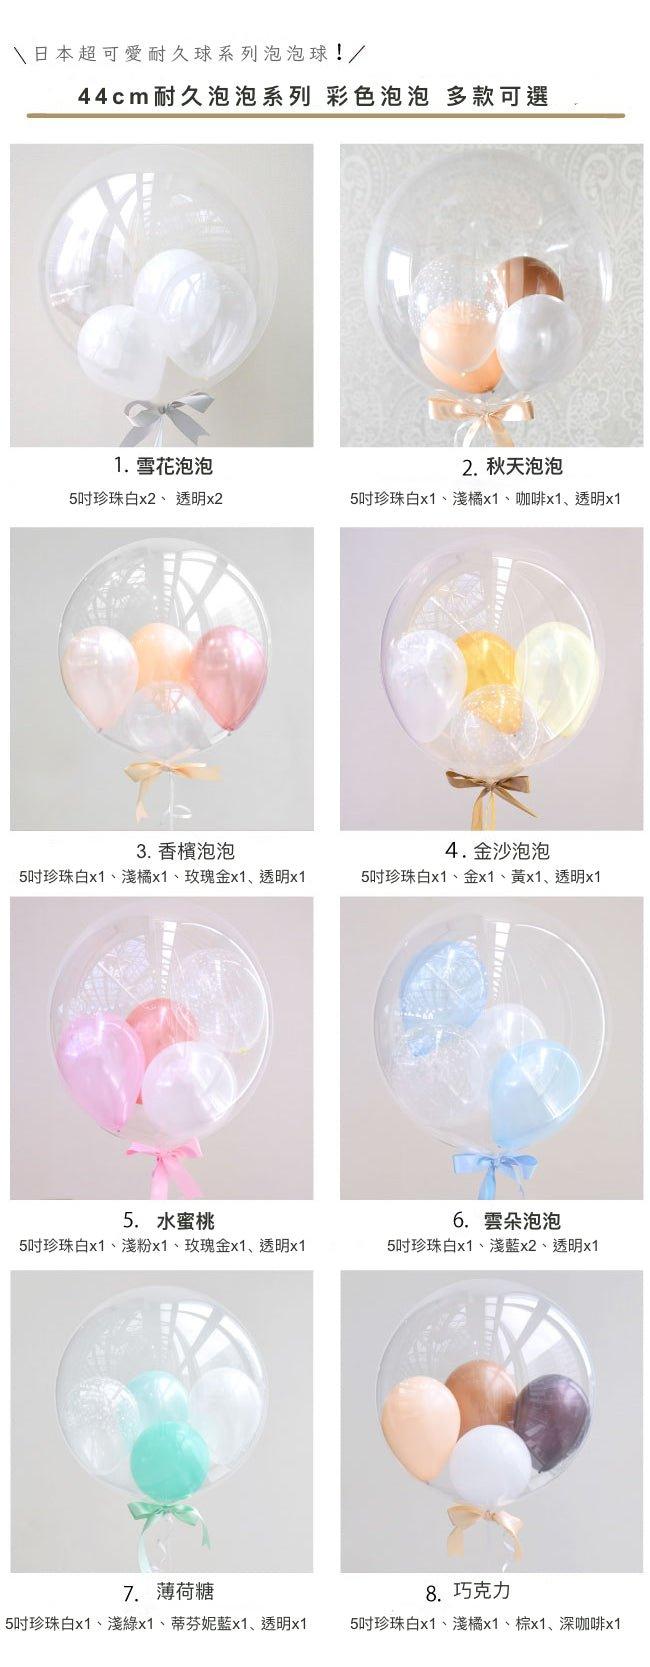 55cm/ Led耐久球驚喜盒 - MR.Balloon 氣球先生官網